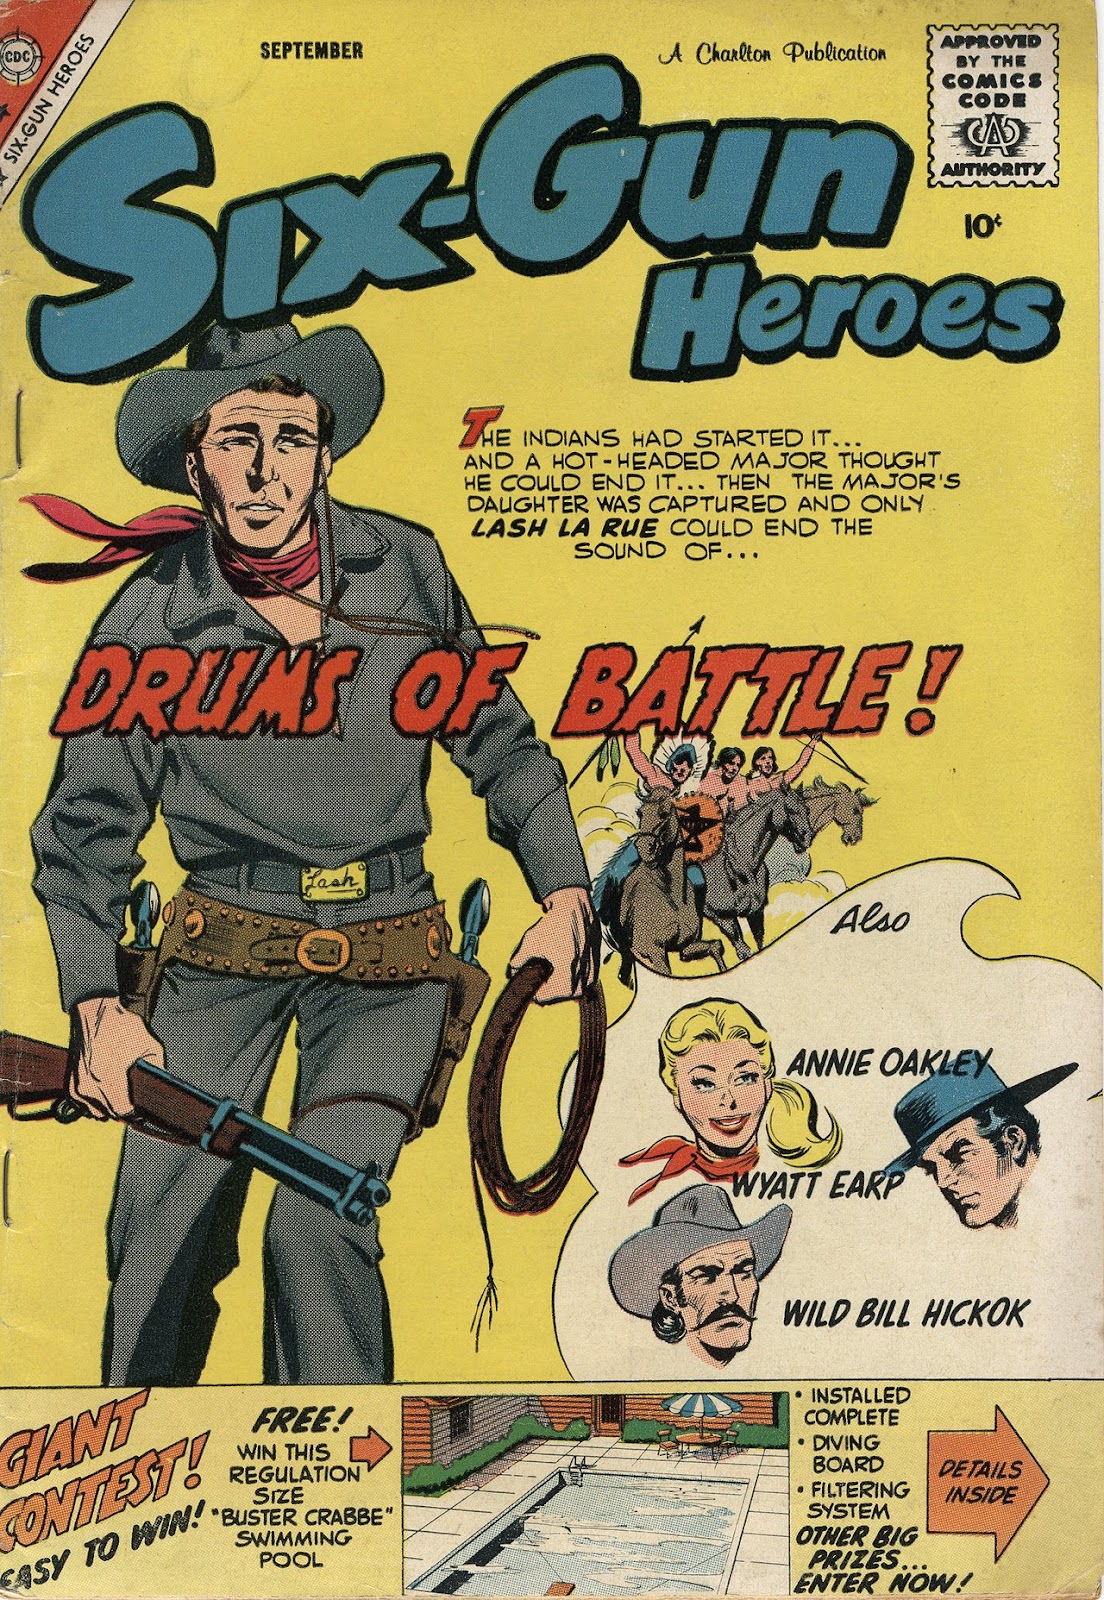 Six-Gun Heroes 53 Page 1